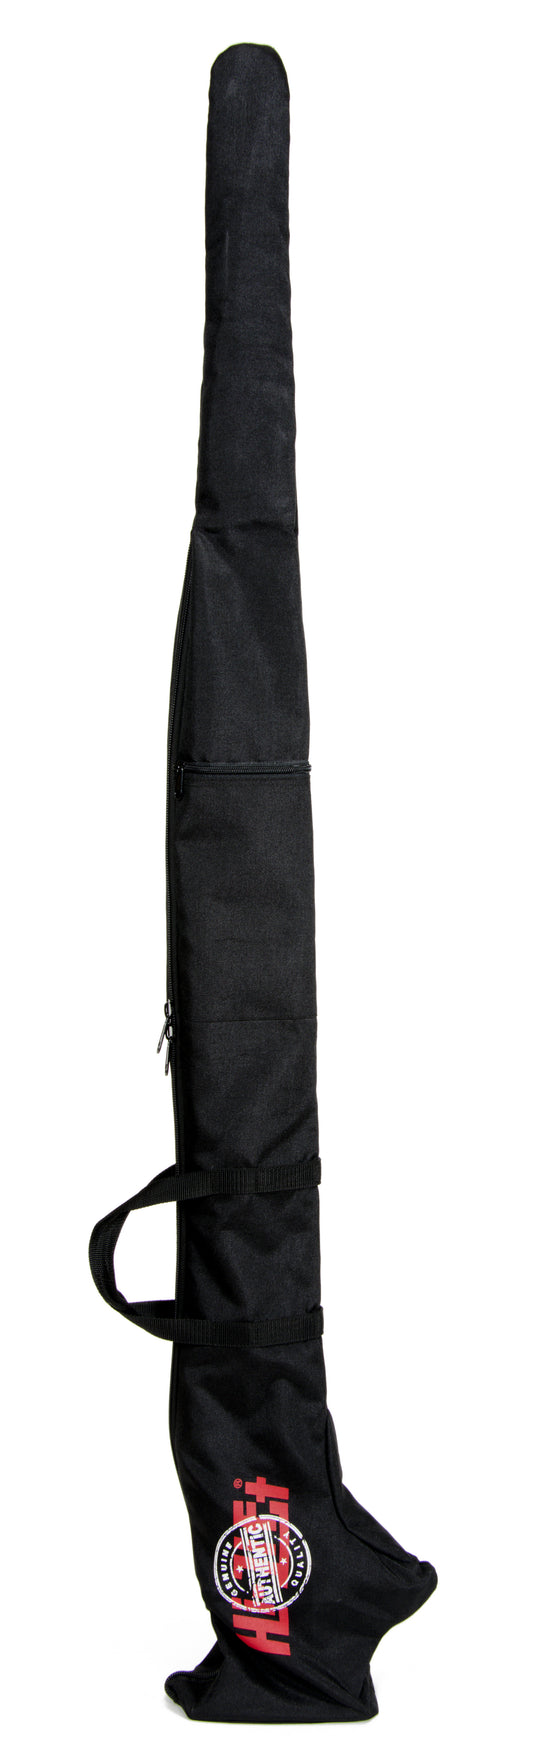 Hi-lift Jack JP-360 Canvas zipper bag for protecting your HI-Lift. Fits 60" models.